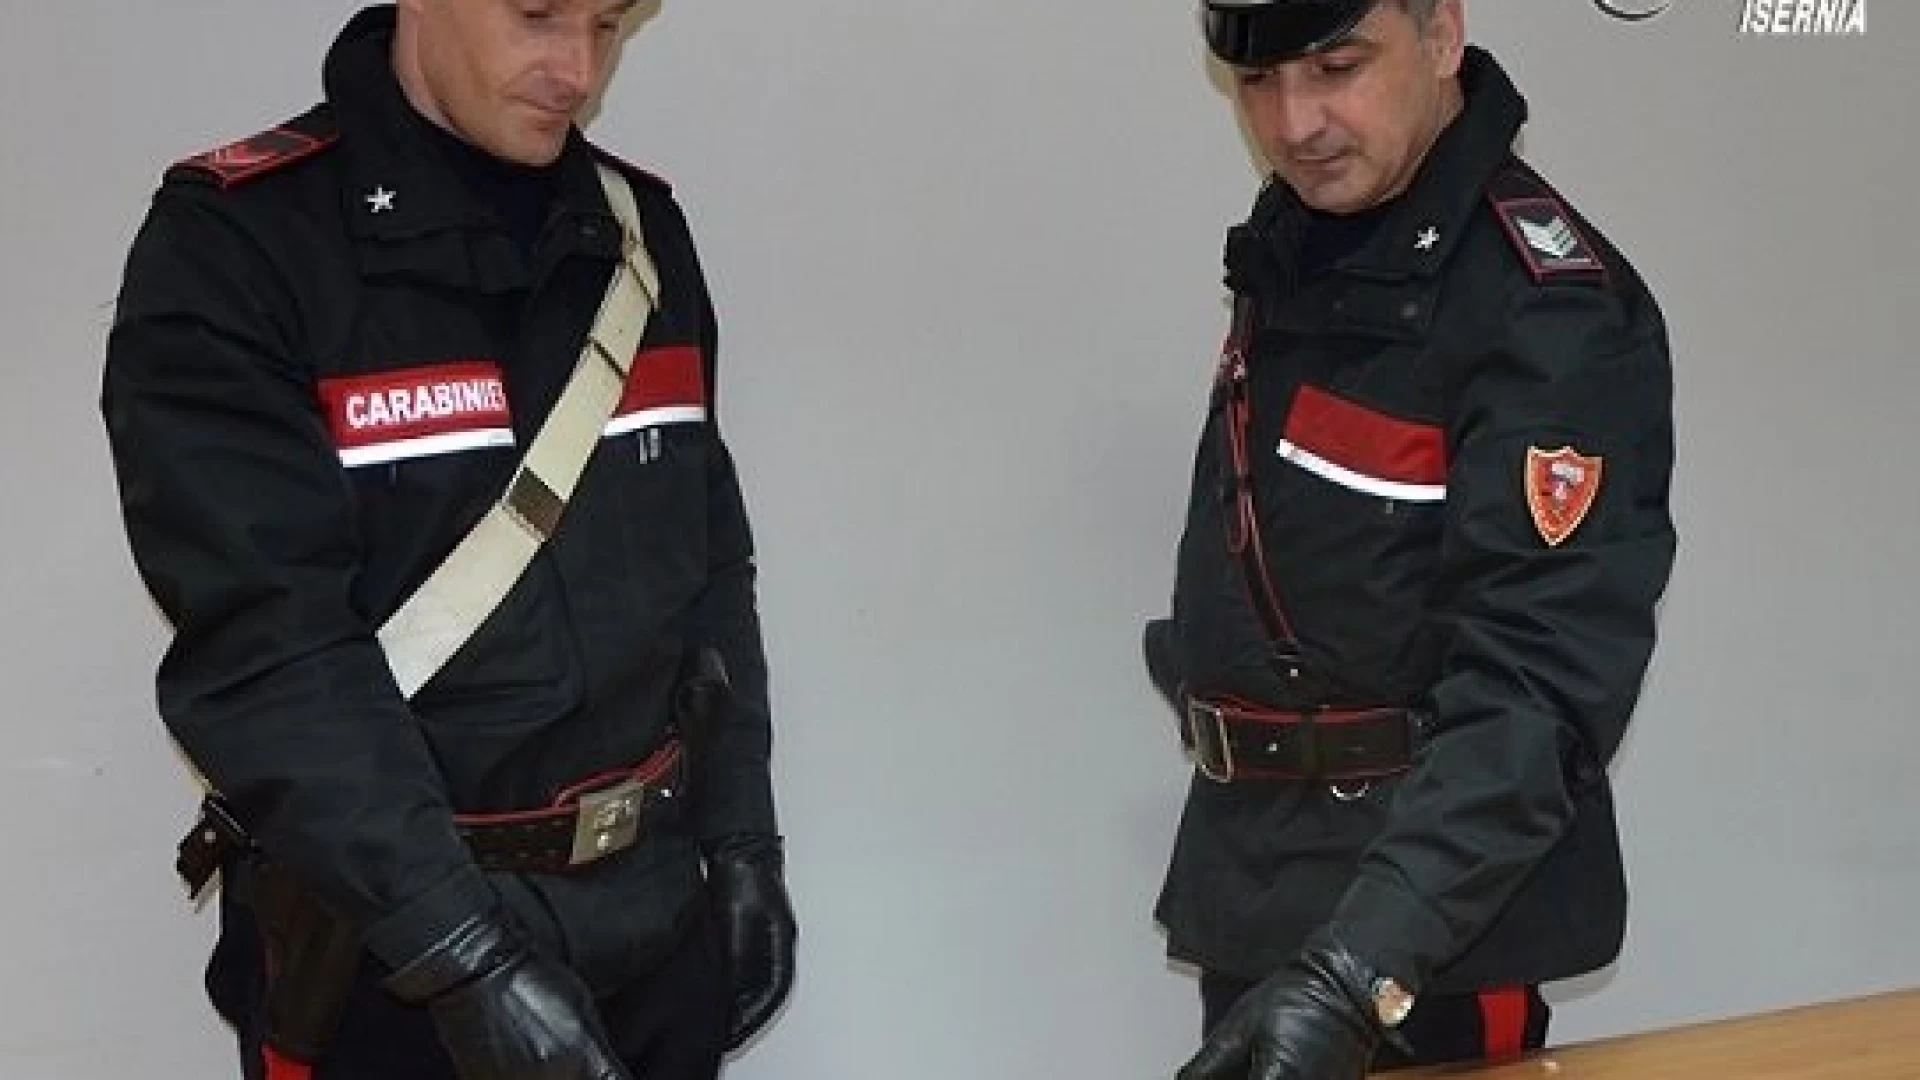 Isernia: L’intervento dei Carabinieri riporta alla calma le intemperanze di un pregiudicato in preda ai fumi dell’alcool.